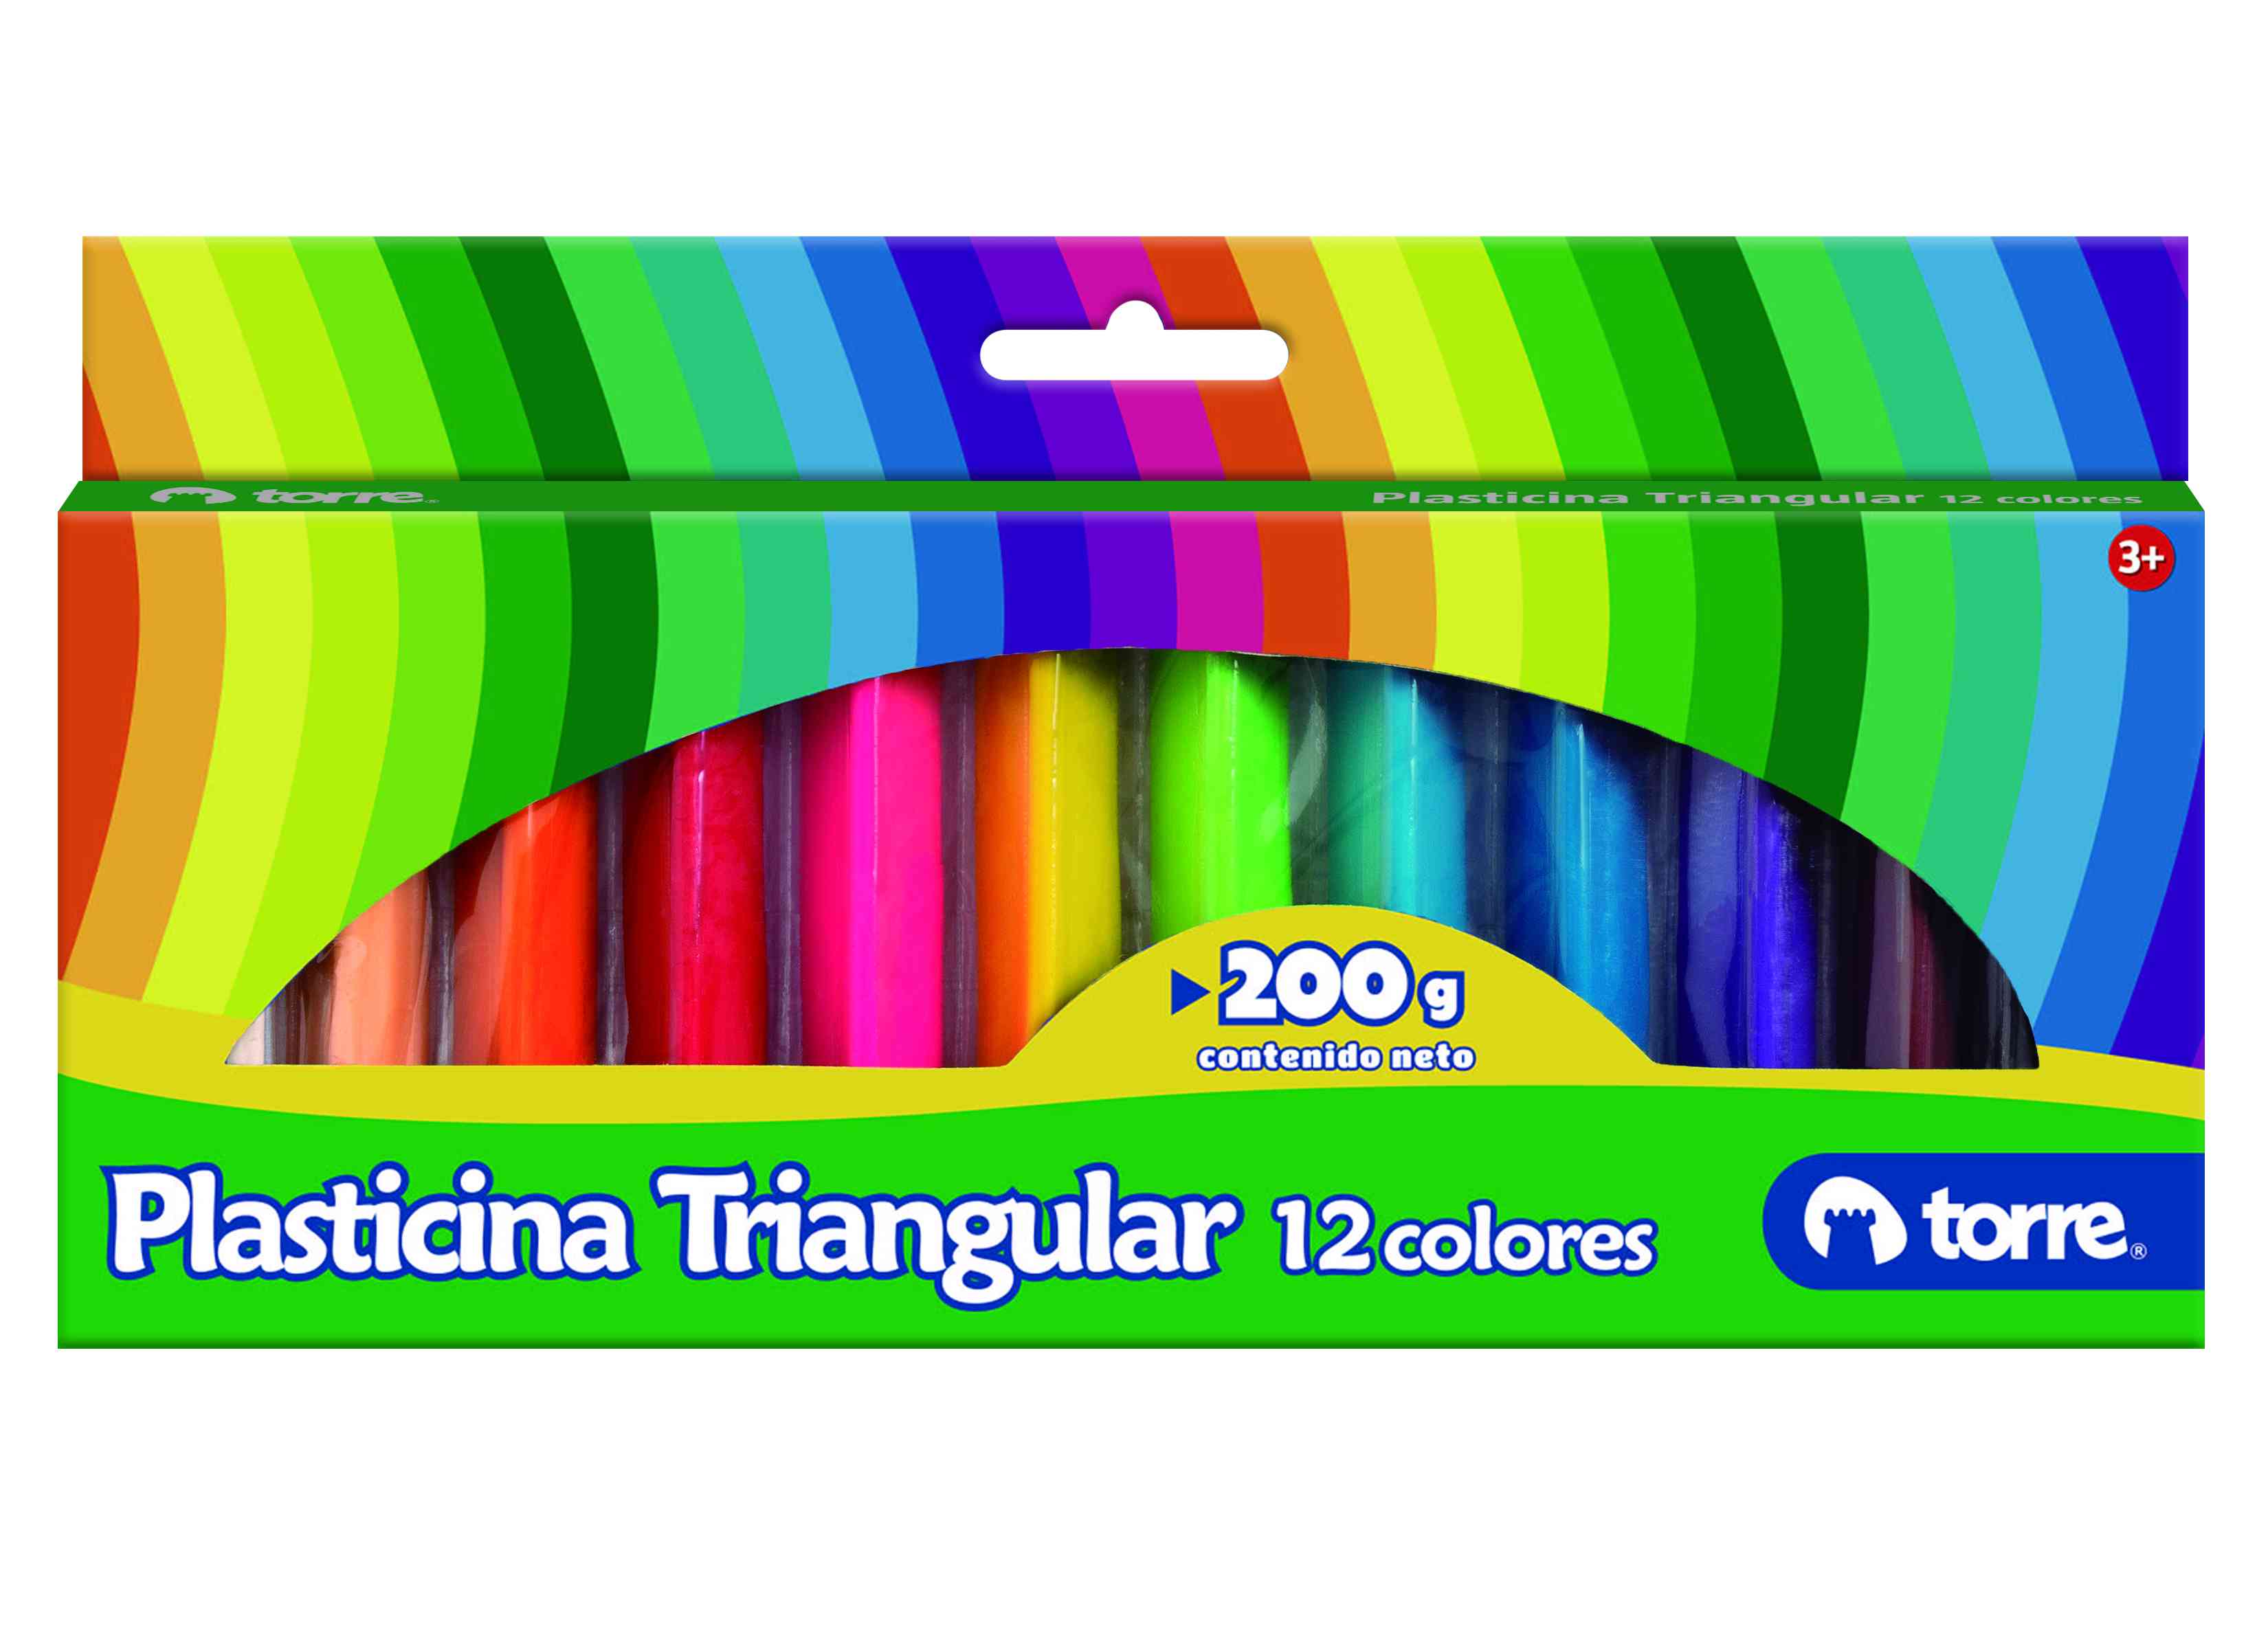 Plasticina triangular 12 colores Torre